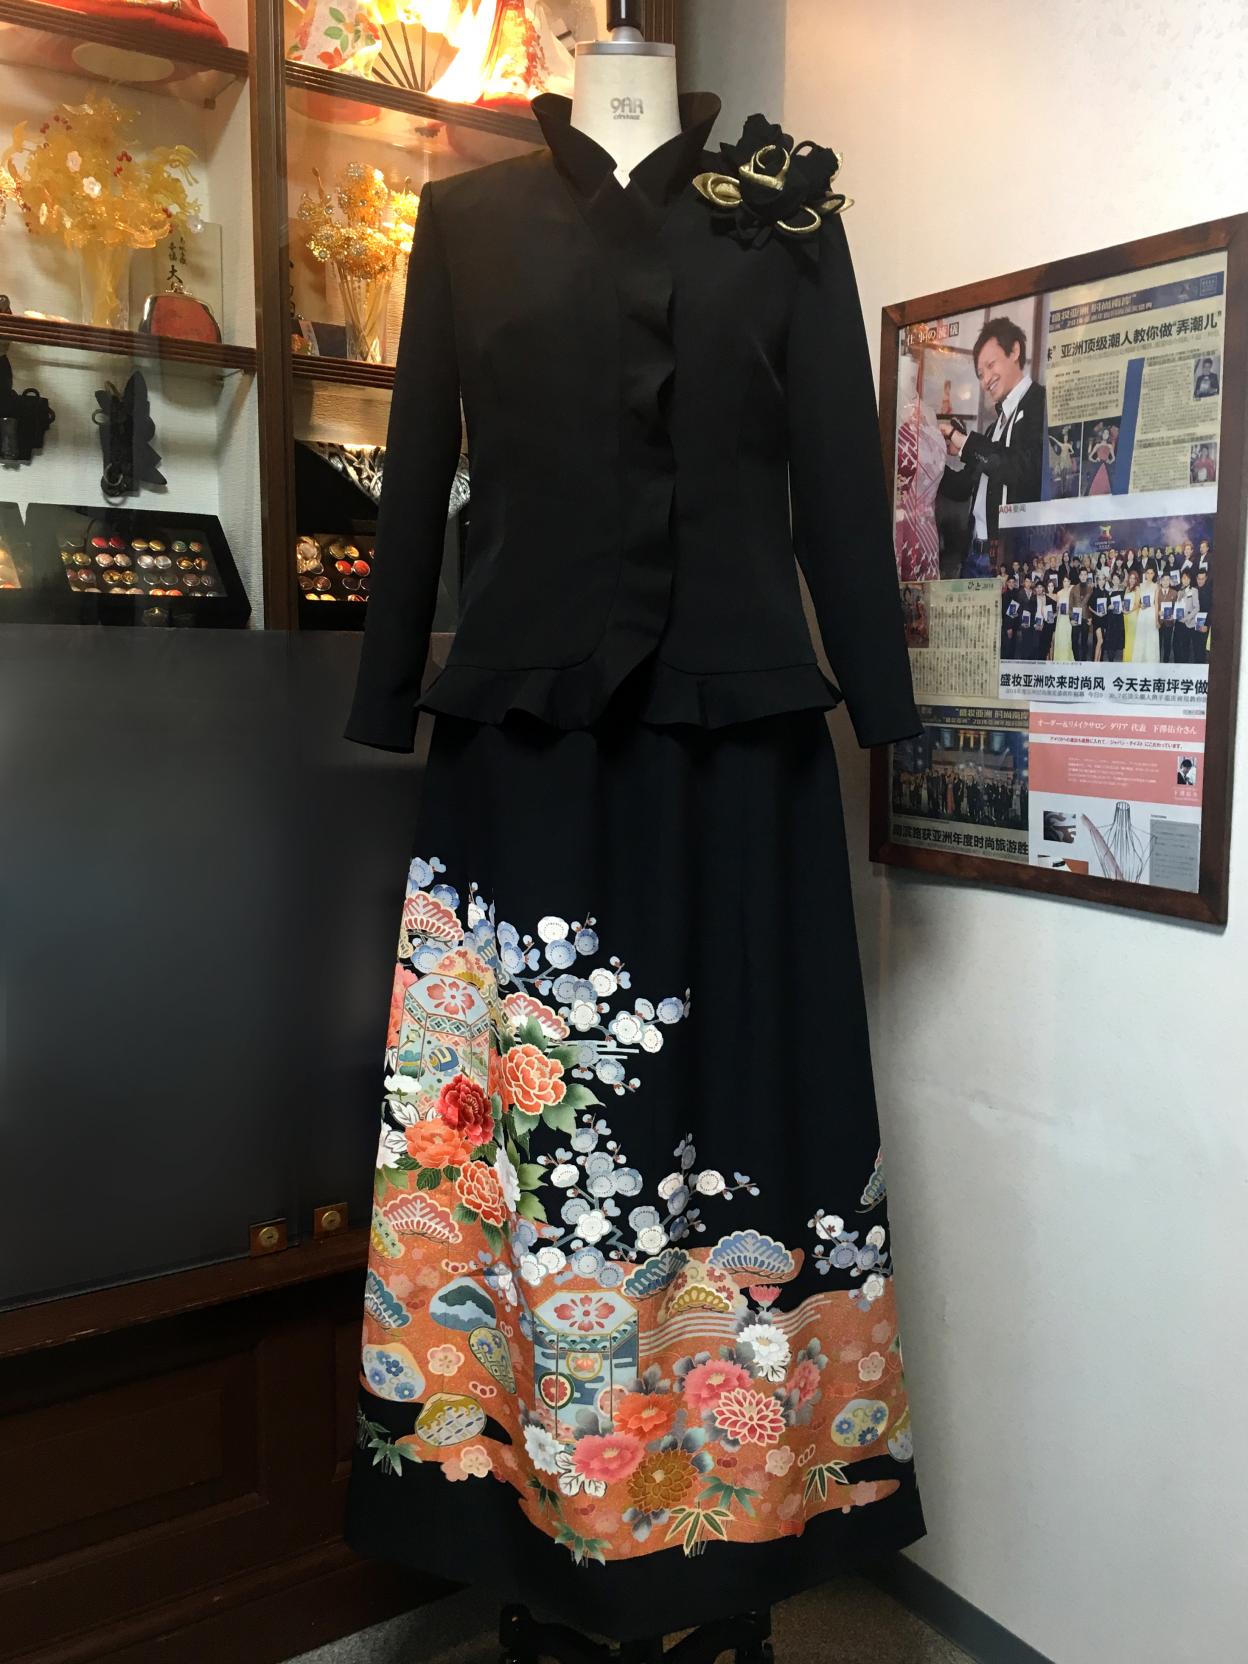 留袖ドレス 黒 2ピース [花] | 着物ドレス・留袖ドレス【Dahlianty/ダリアンティー】レンタル、購入、オーダーができる和ドレス着物